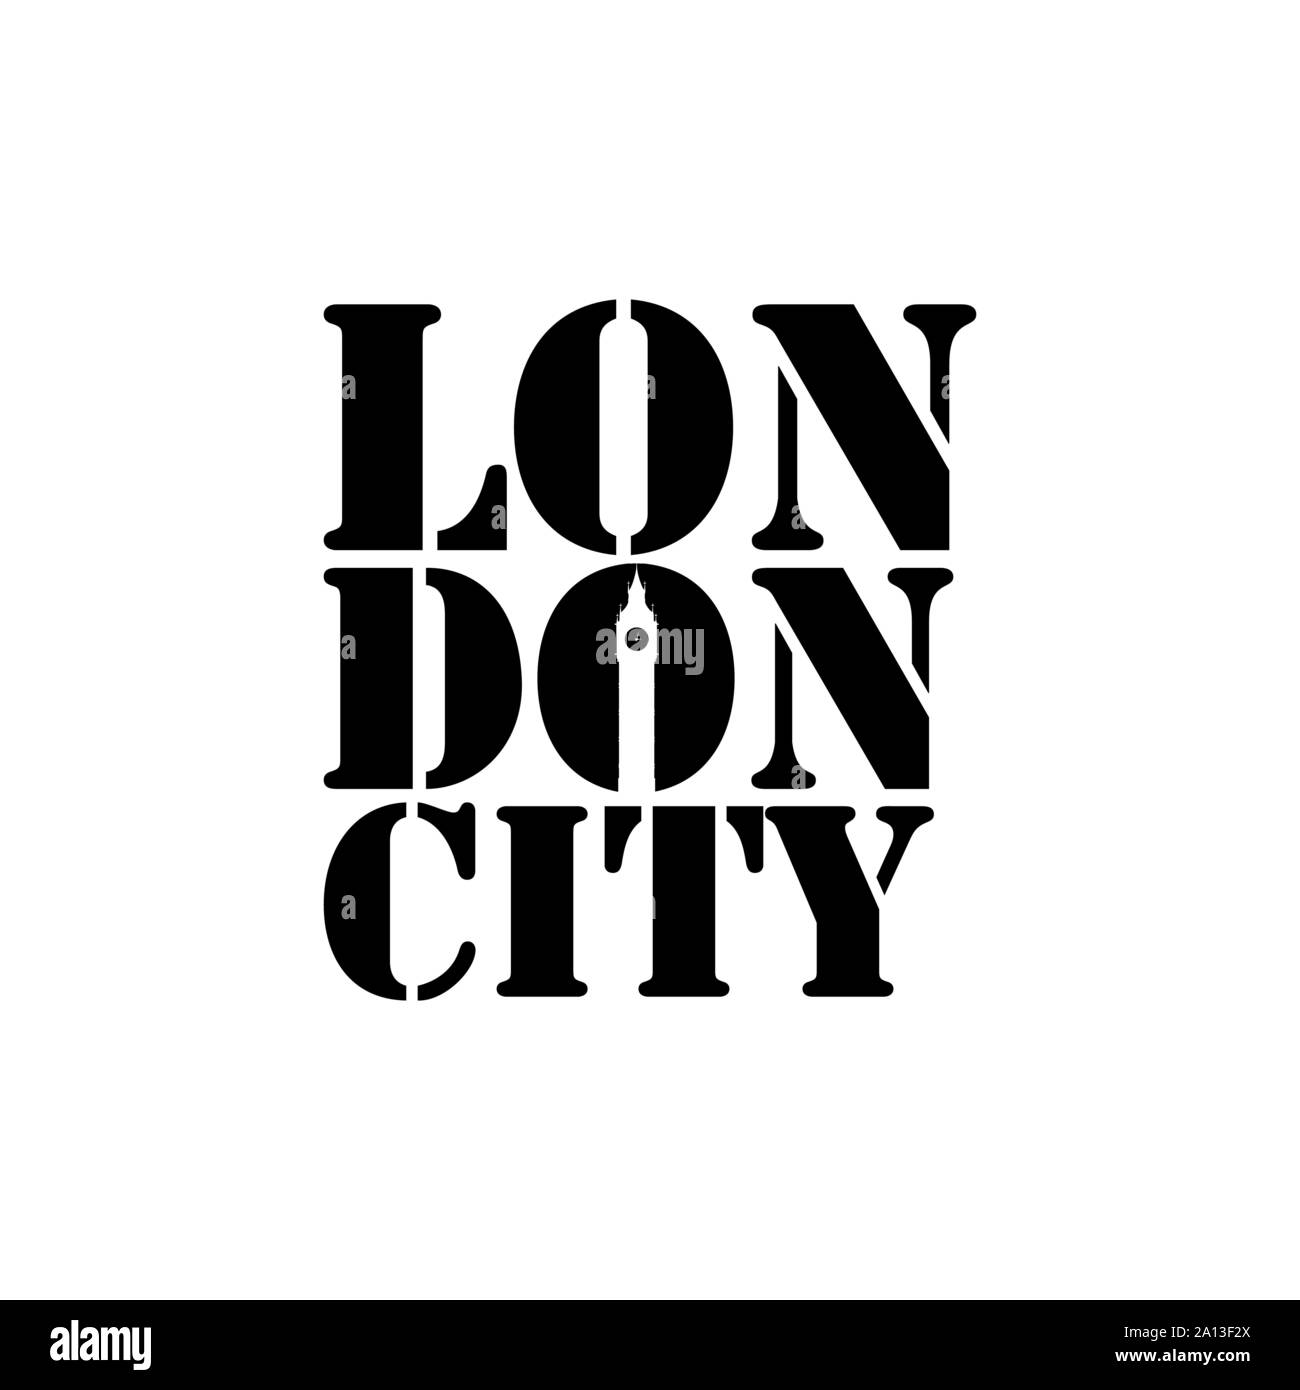 London City schrift Typografie mit Big Ben Uhr in negativen Raum Stil Design Vector Stock Vektor